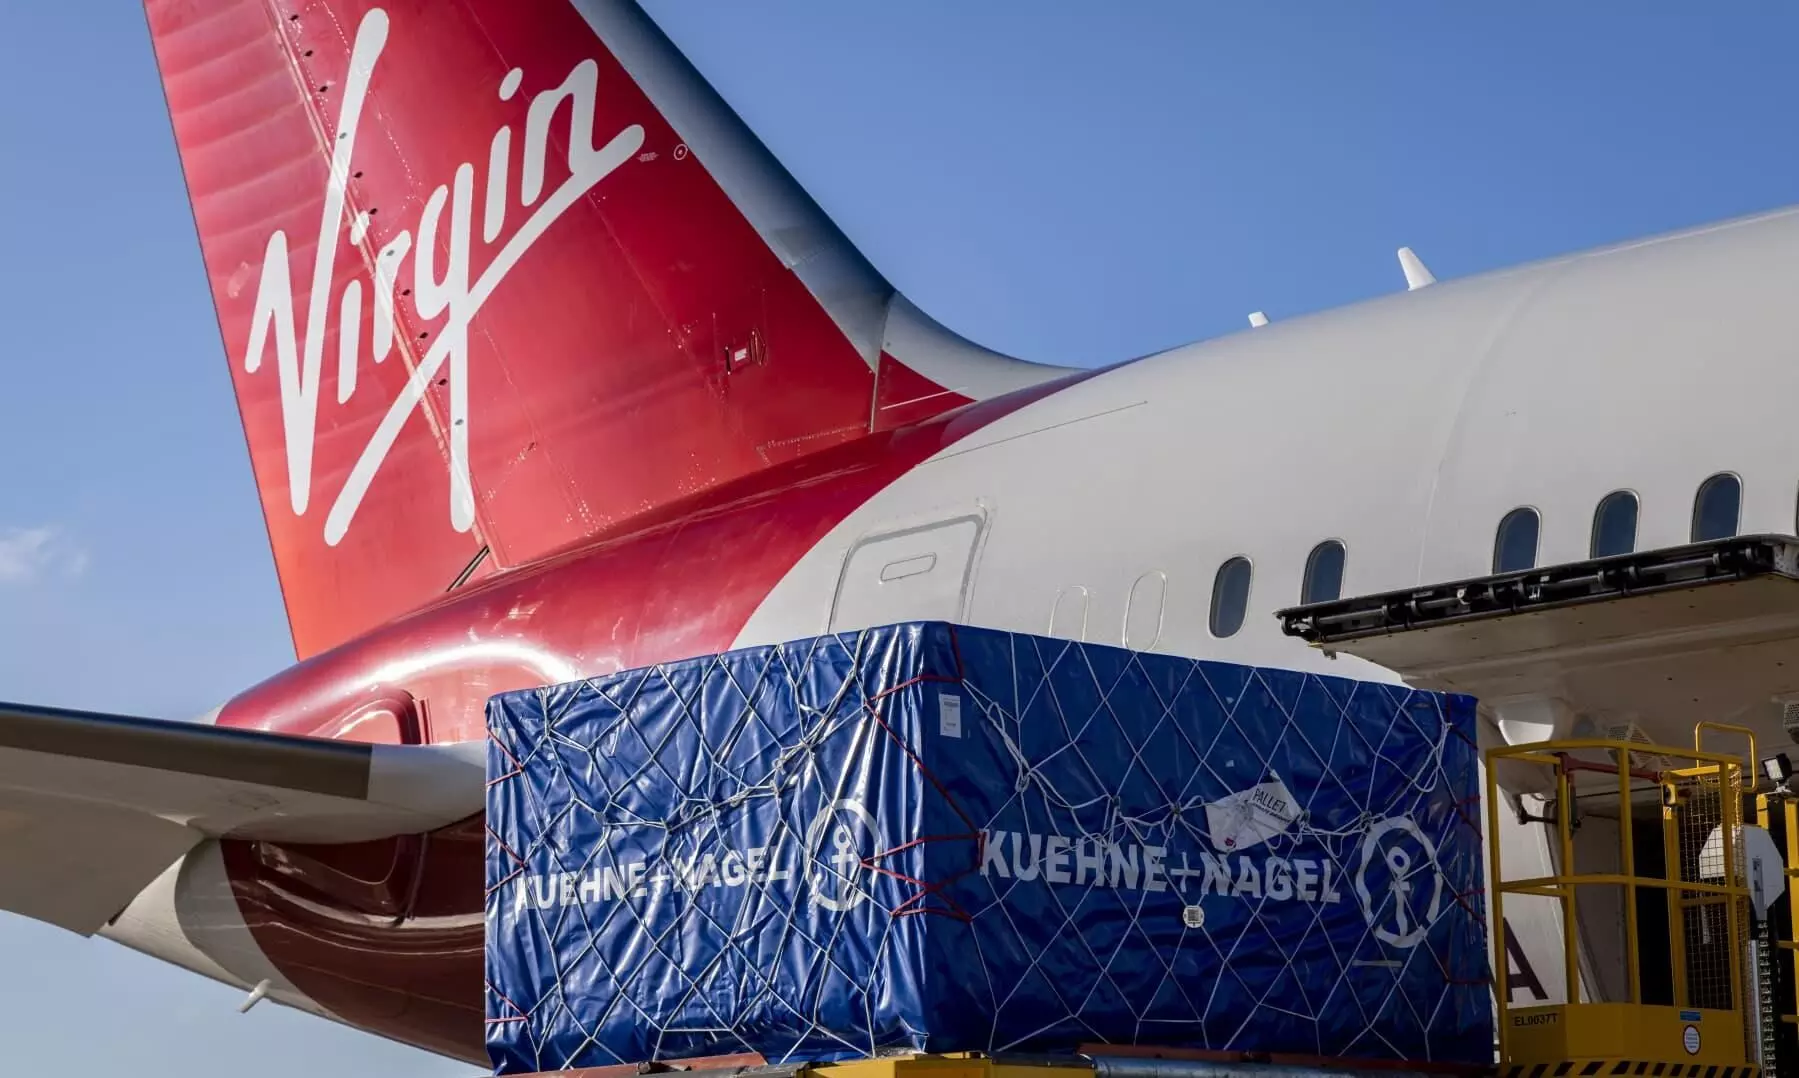 Kuehne+Nagel delivers first shipment transported on 100% SAF flight